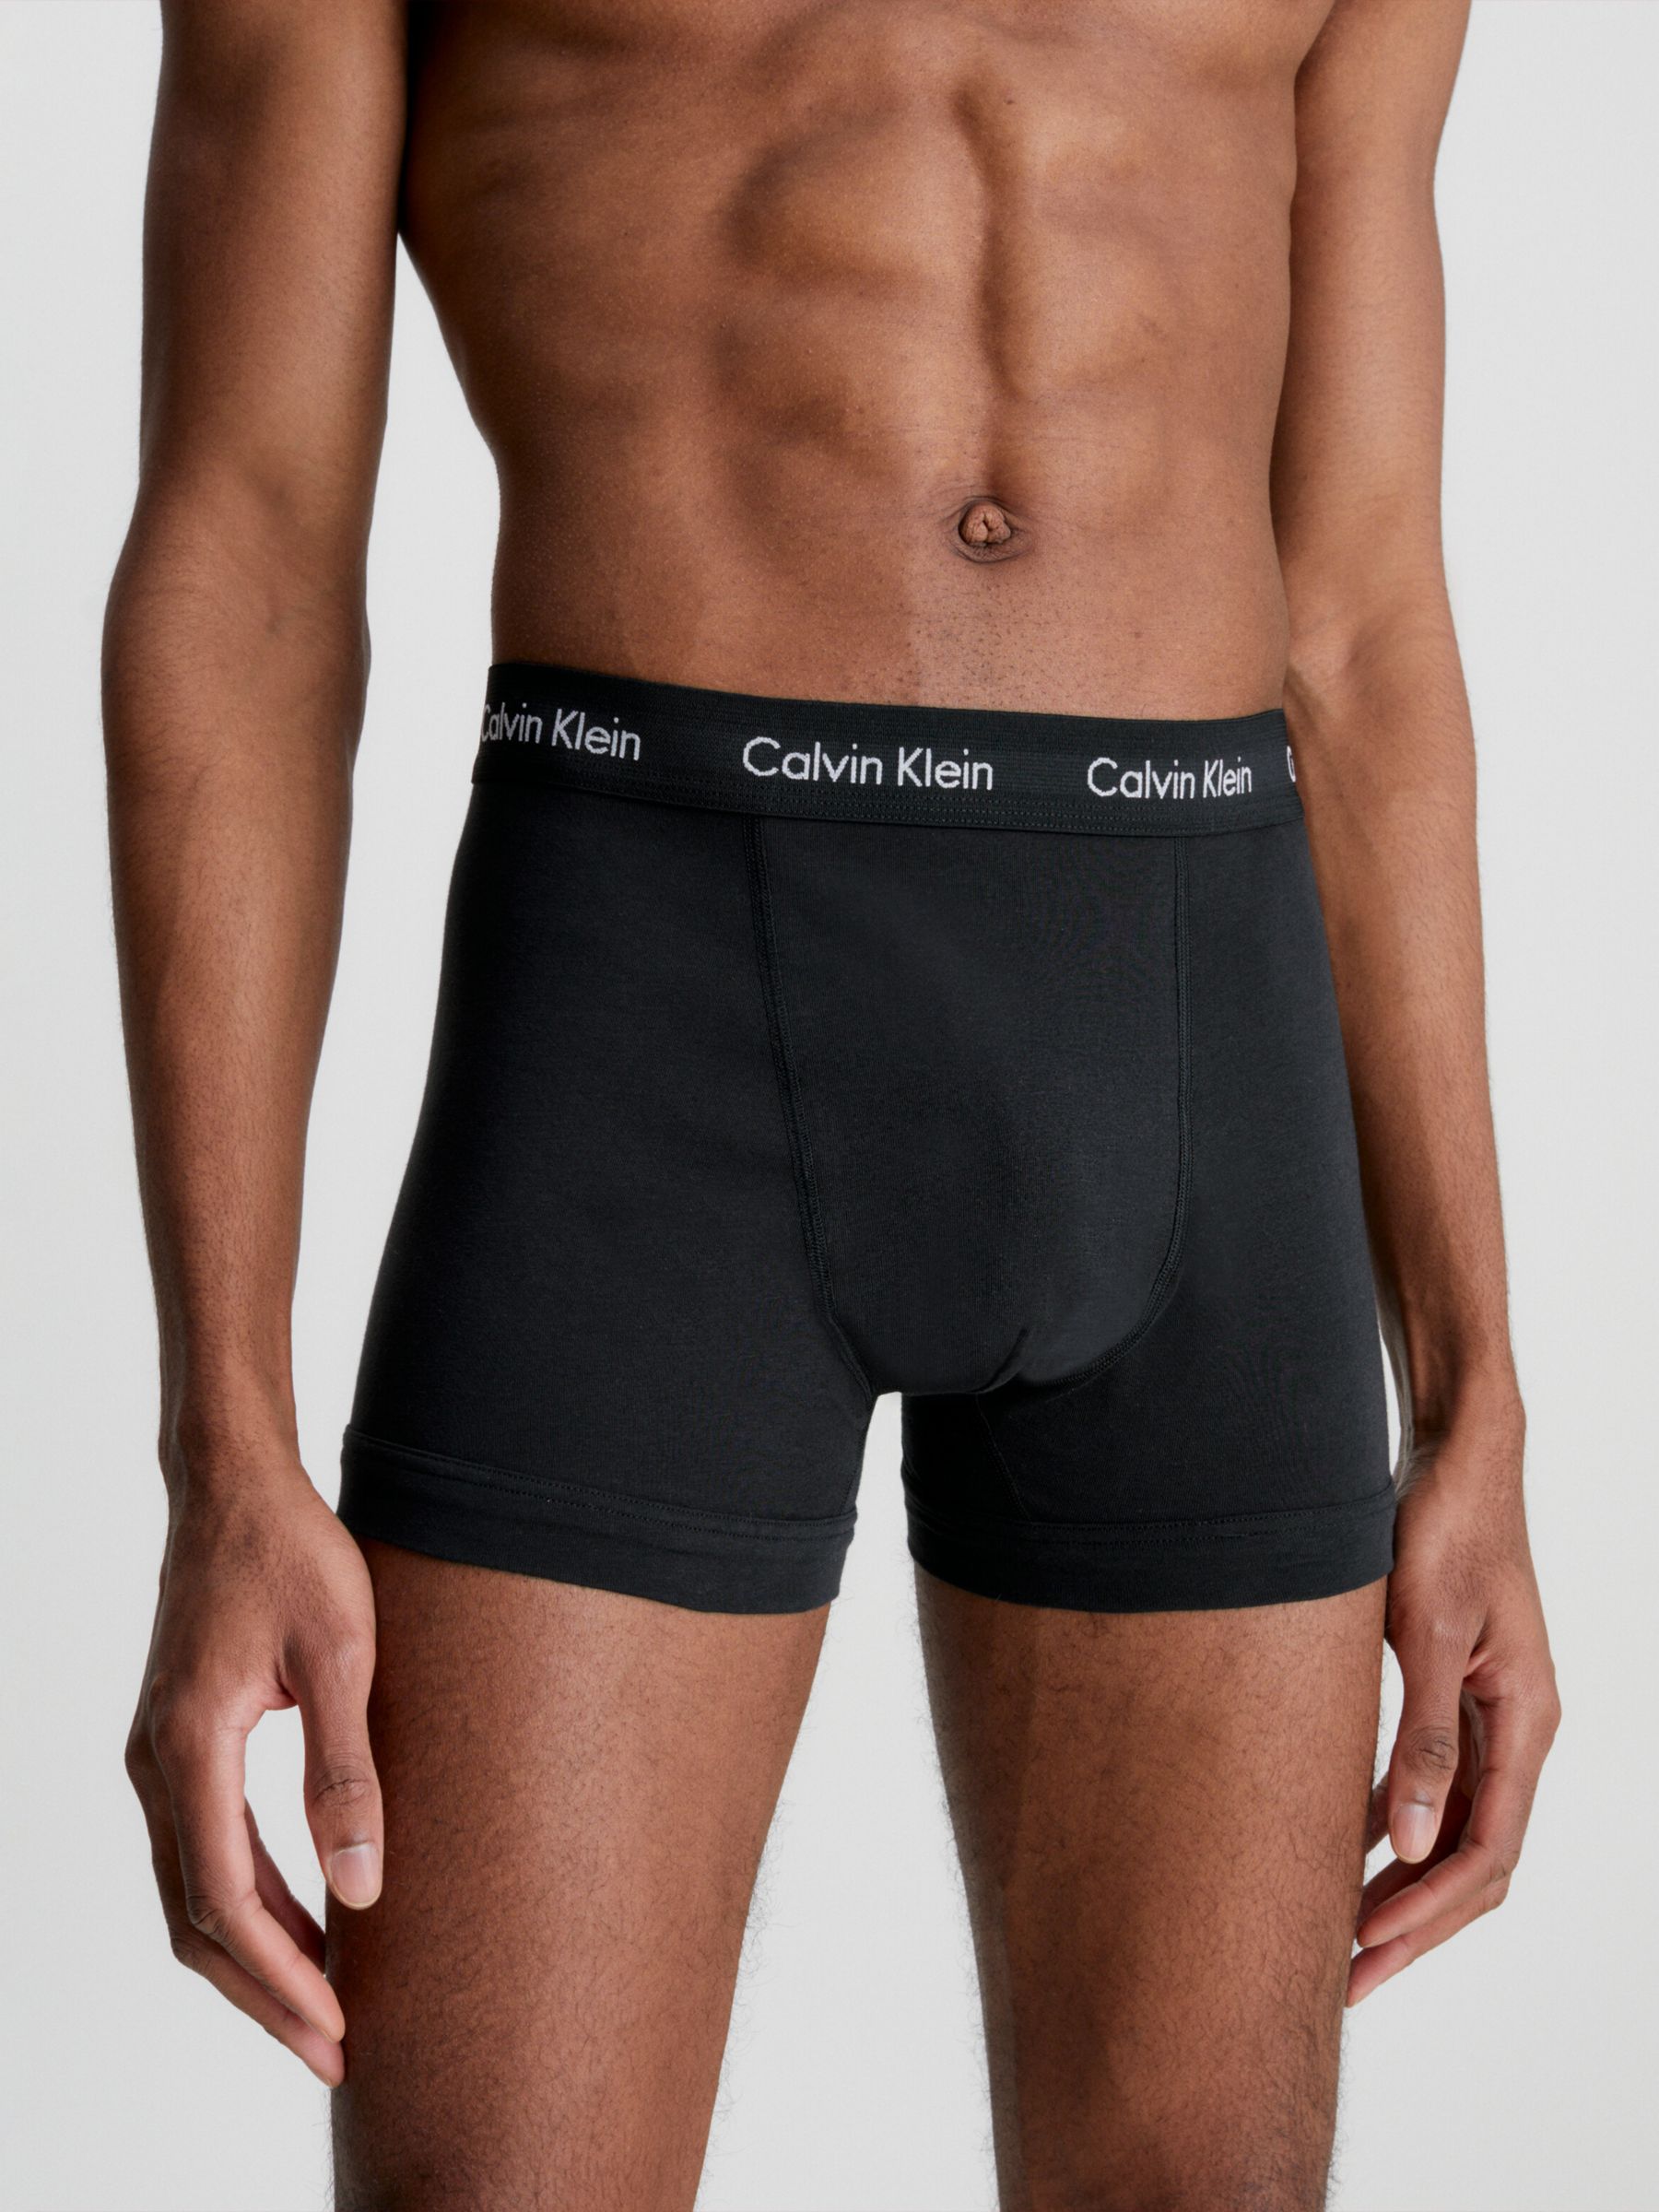 Calvin Klein Underwear MODERN COTTON STRETCH HOLIDAY TRUNK 5 PACK Multi